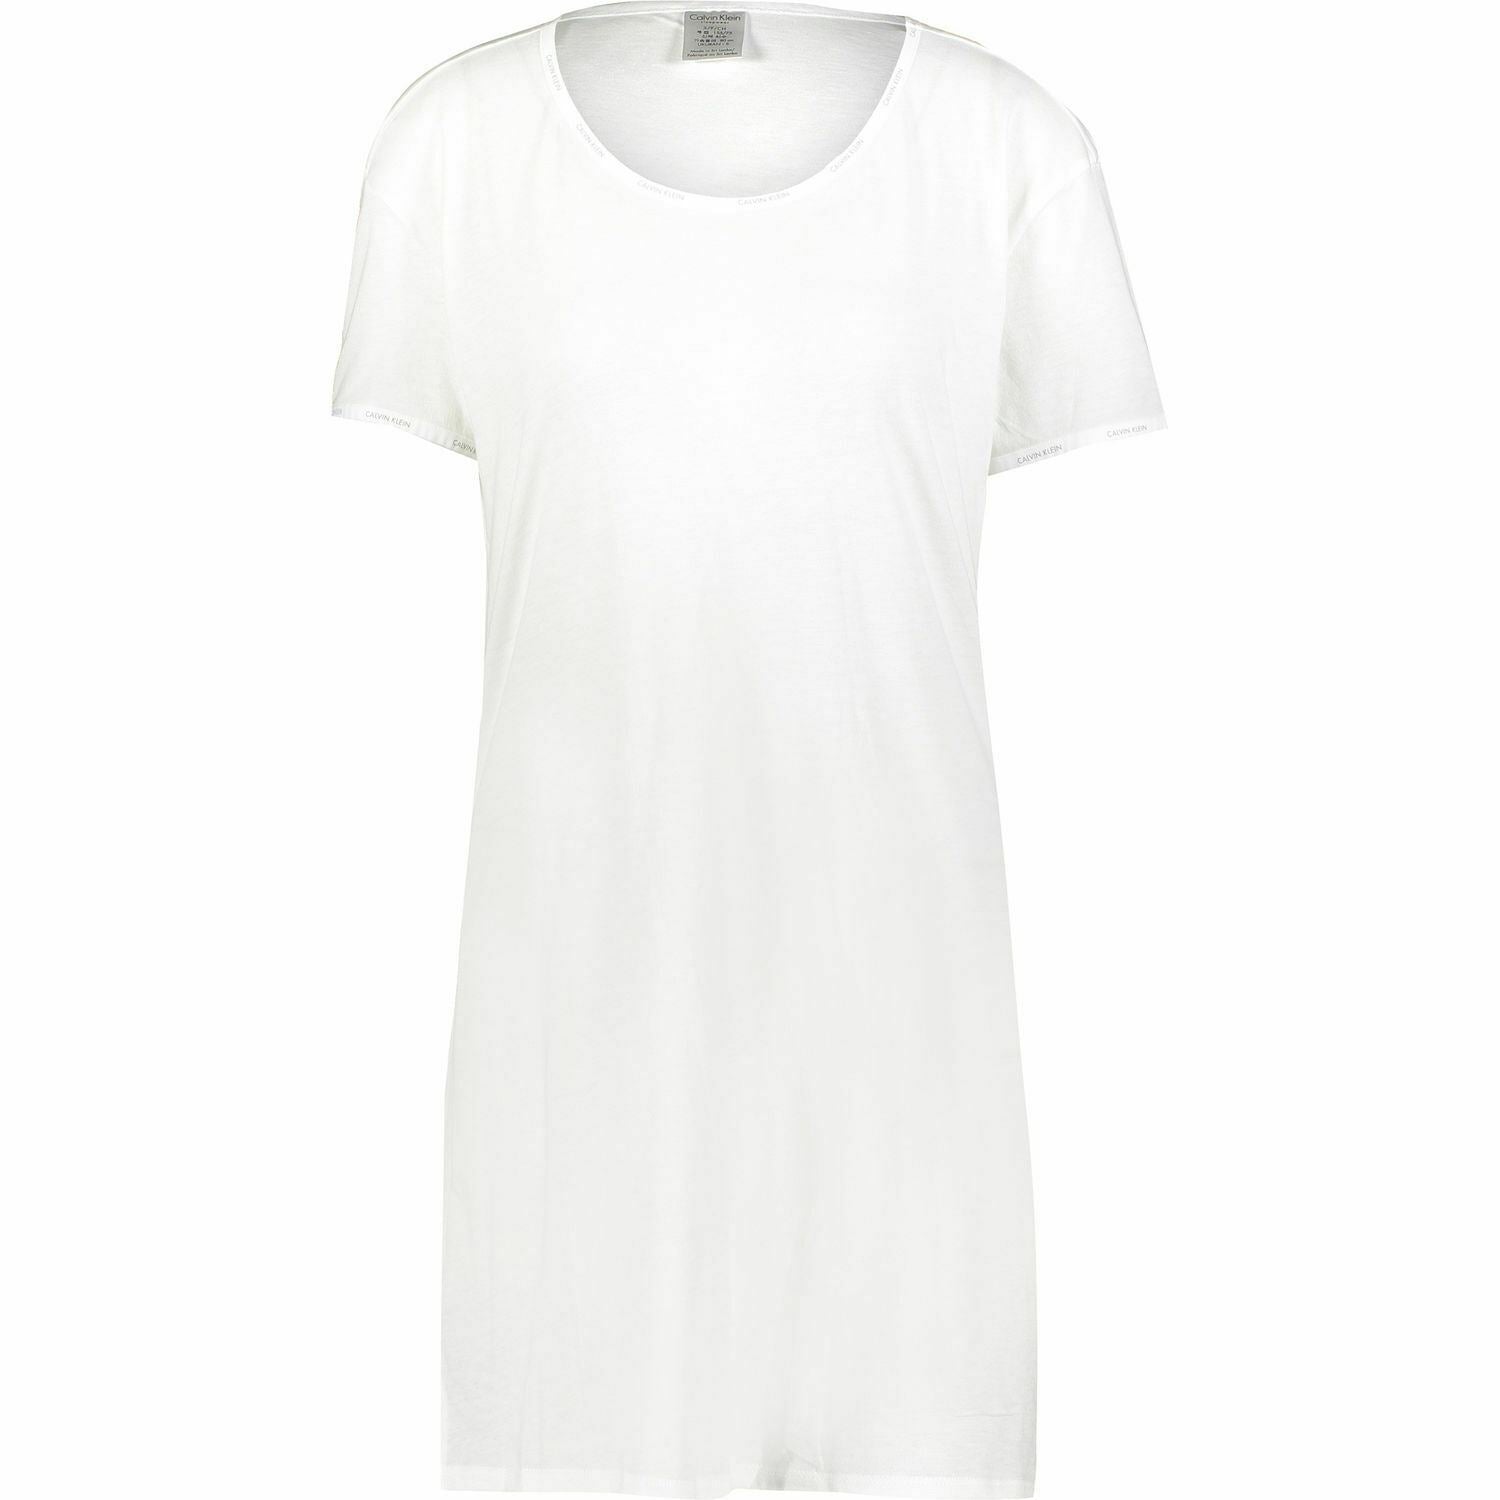 CALVIN KLEIN SLEEPWEAR Women's White Scoop Neck Night Shirt, Nightie, size XS